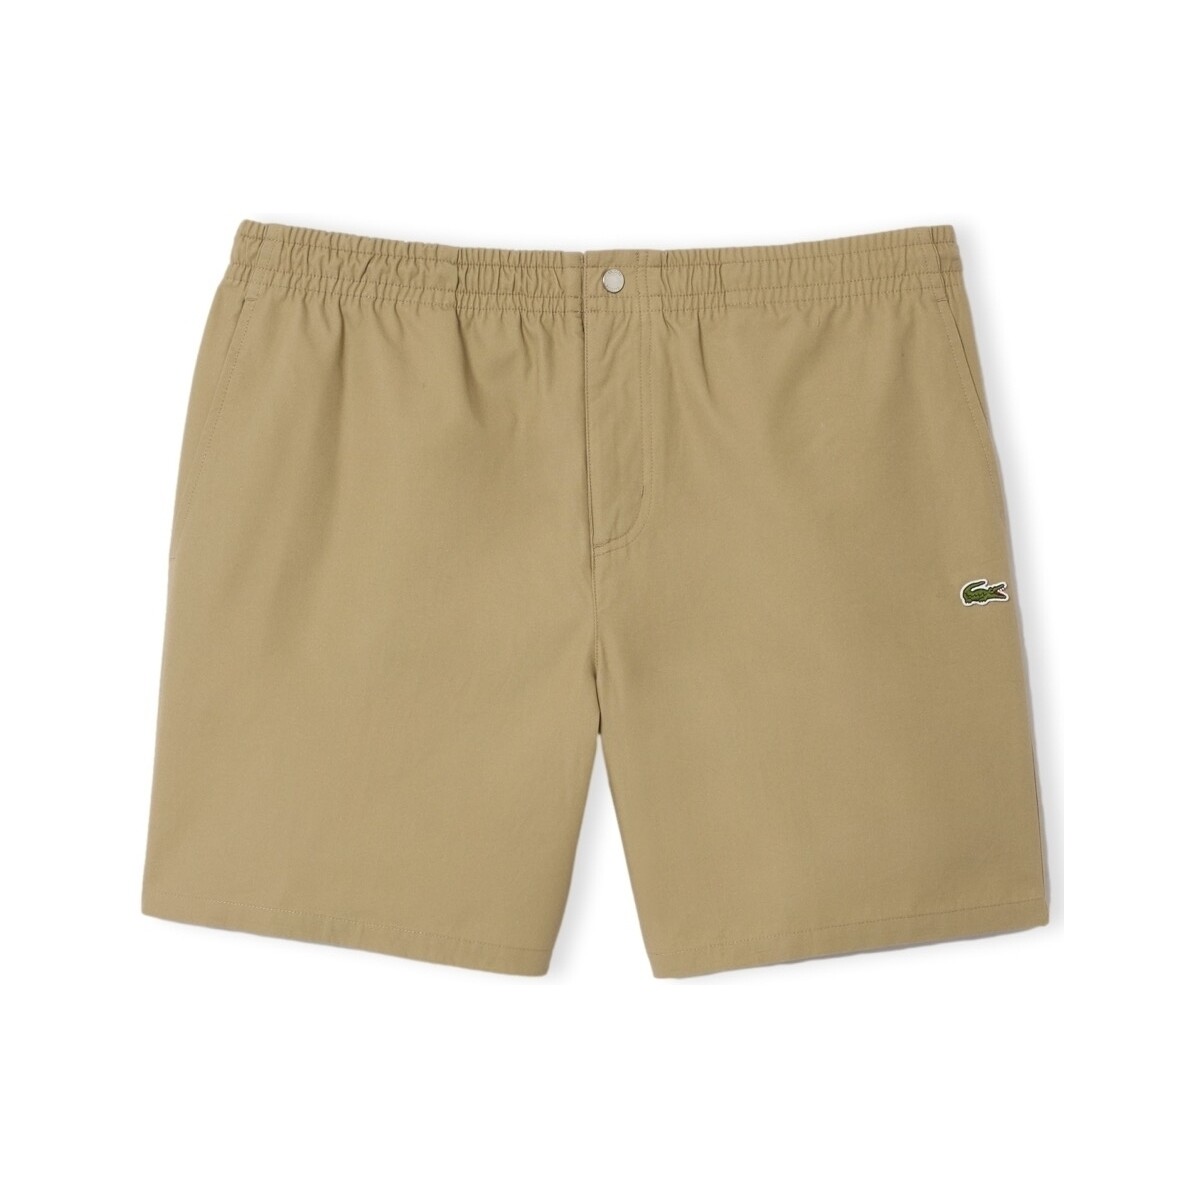 Îmbracaminte Bărbați Pantaloni scurti și Bermuda Lacoste Shorts - Beige Bej